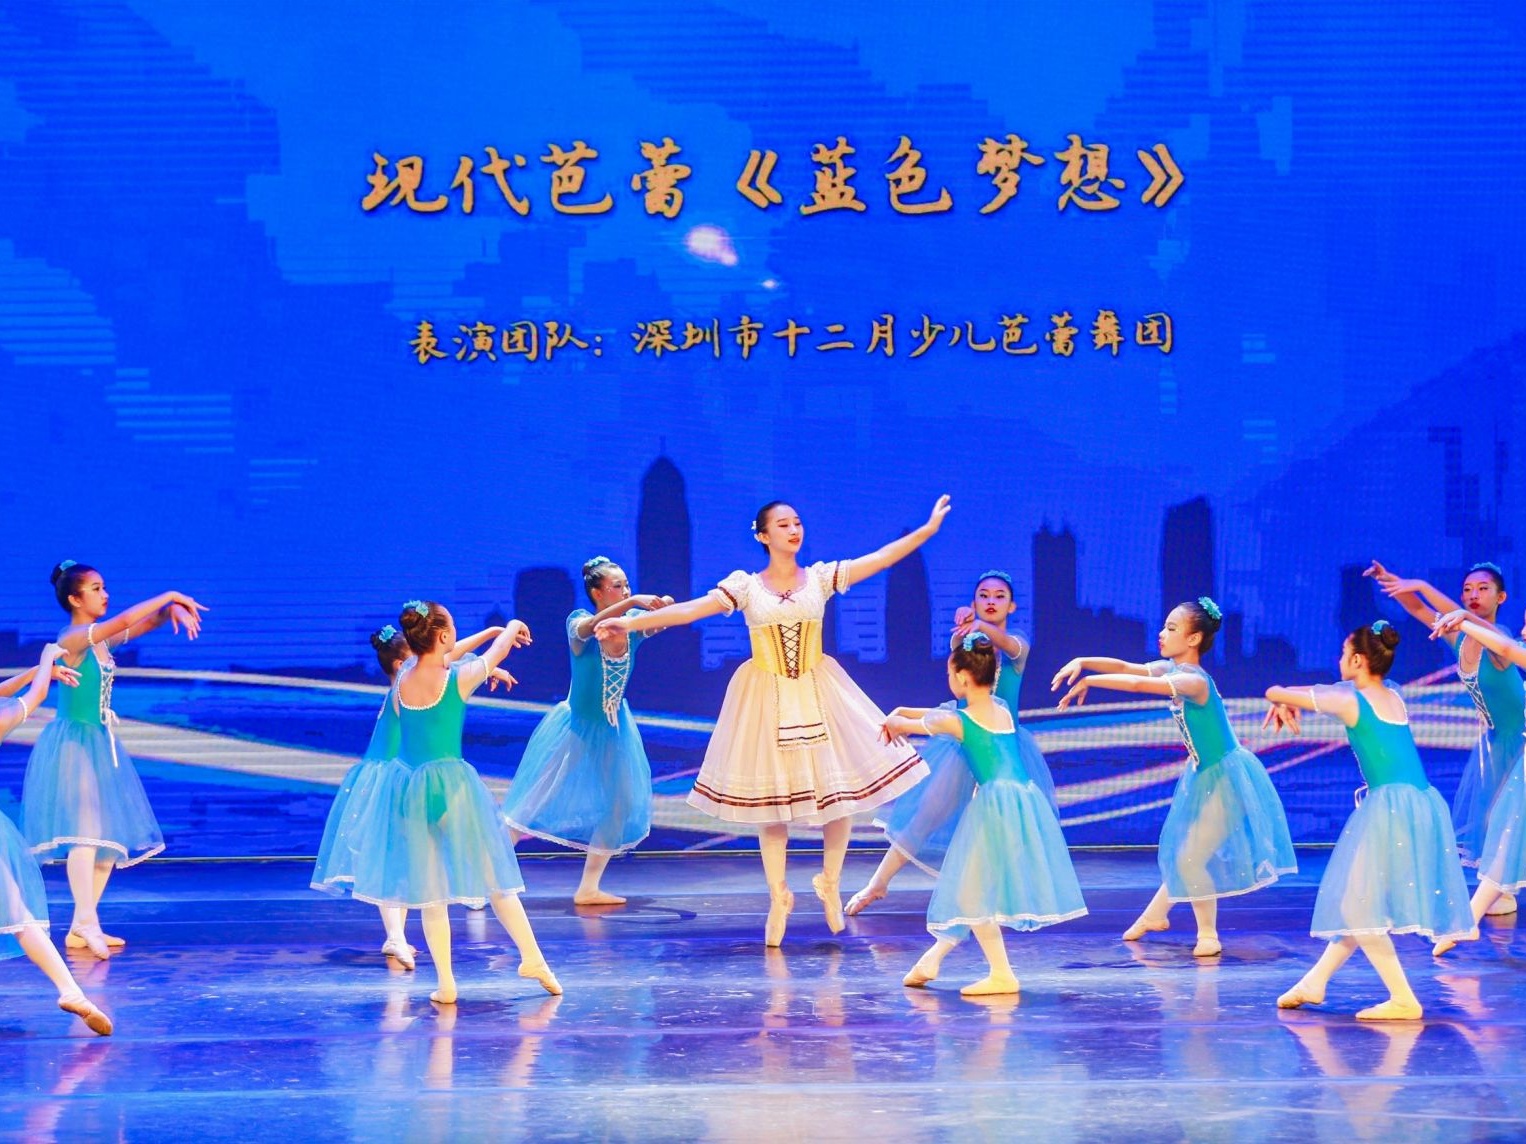 荟萃足尖艺术的盛宴！第二届福田国际芭蕾舞艺术交流周GALA晚会华美上演